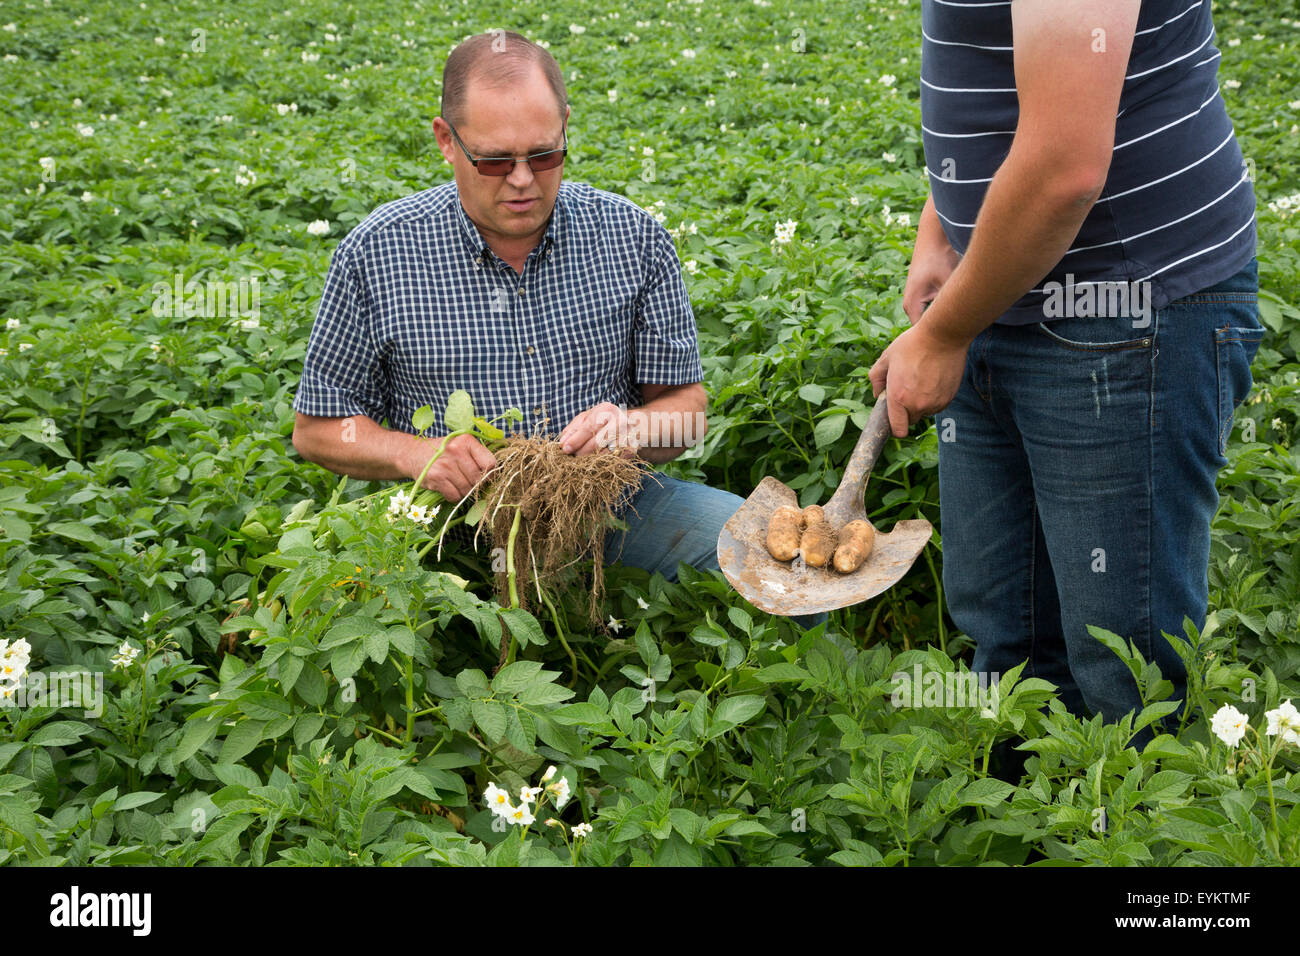 Shelley, Idaho - Kartoffel Landwirt Bryan Searle und sein Sohn, Ray, graben ein Werk, das Wachstum der Kartoffeln auf ihrer Farm zu überprüfen. Stockfoto